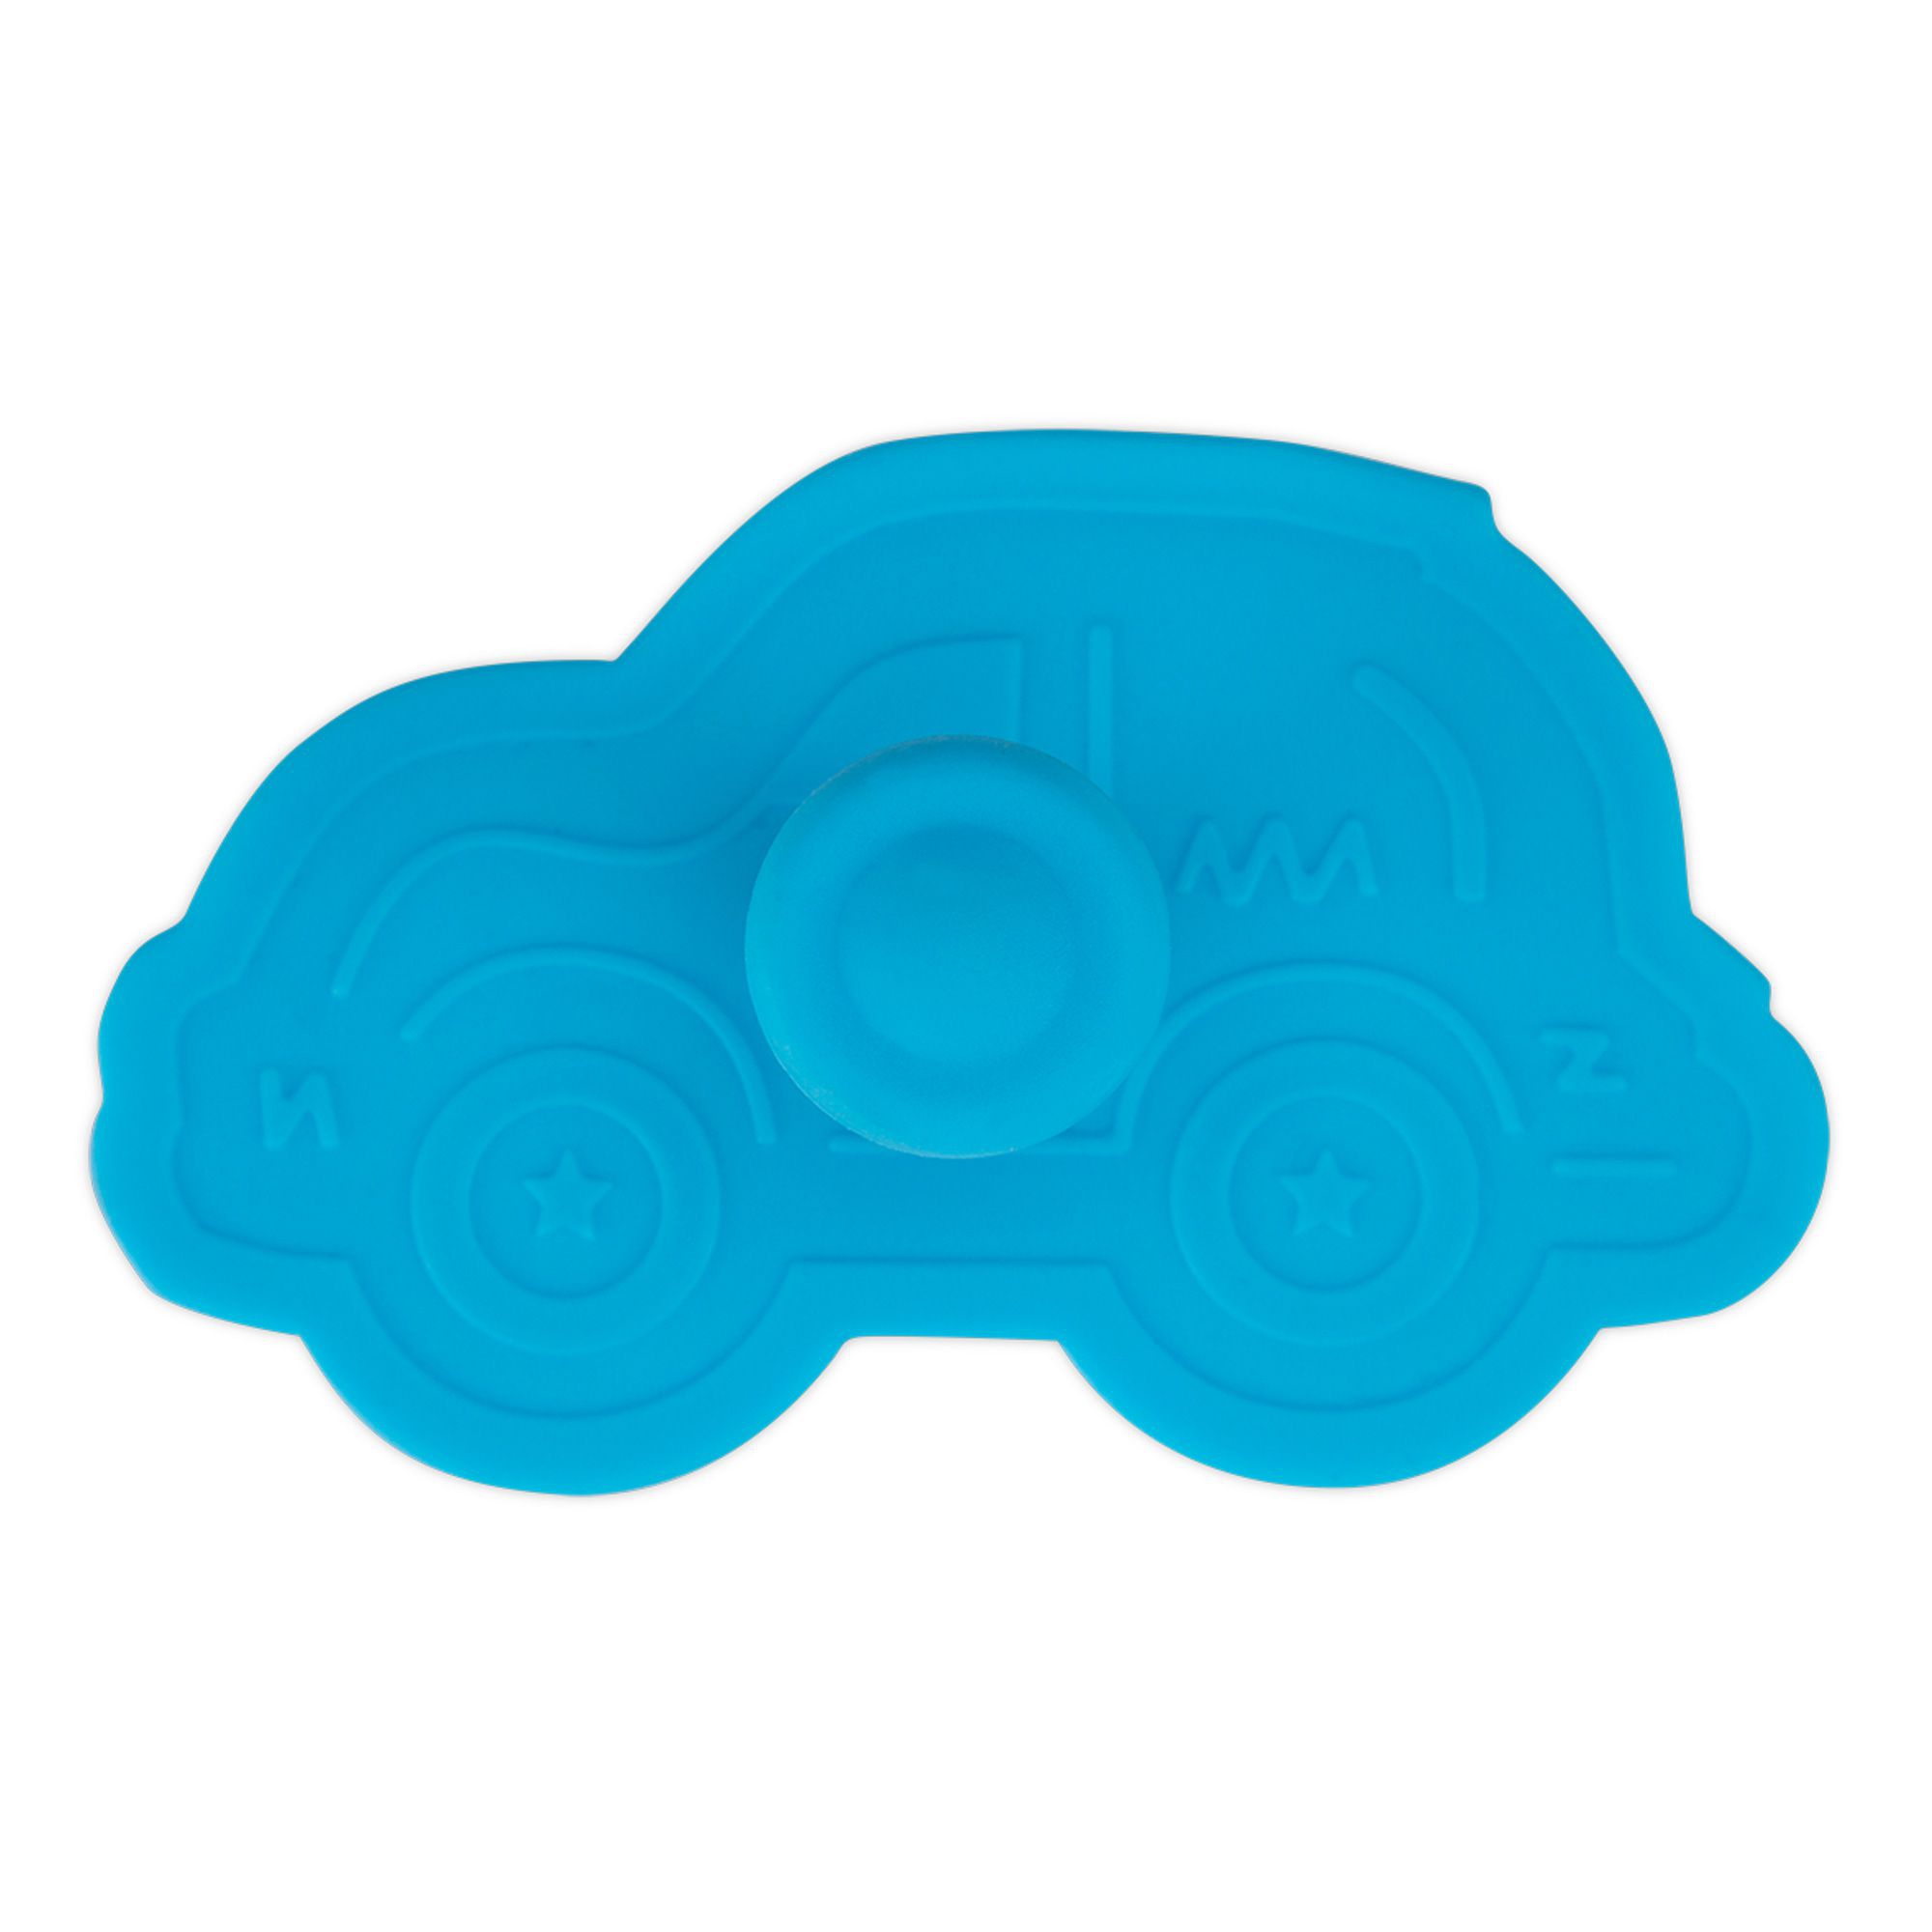 Städter - cookie cutter car 7 cm - light blue